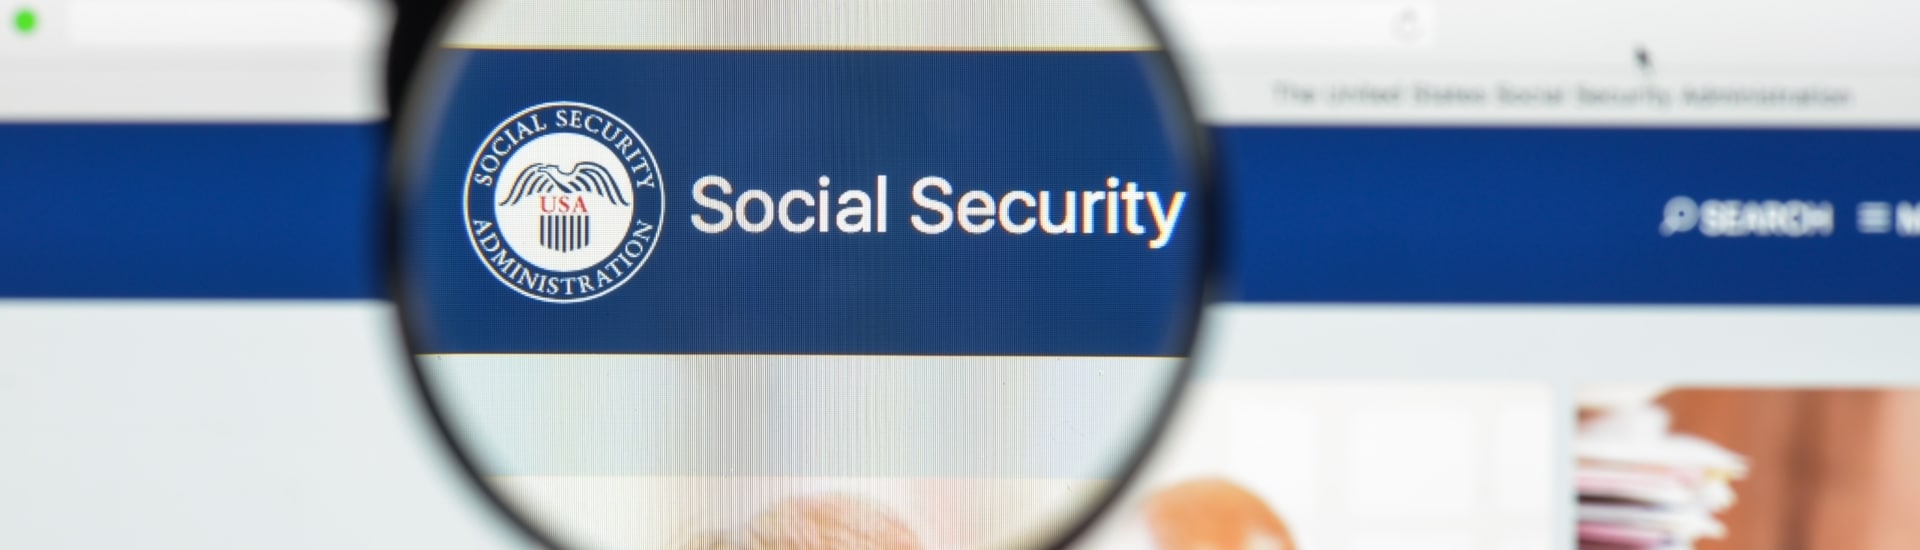 Lo que debes saber sobre el consejo nacional de apelaciones de seguridad social